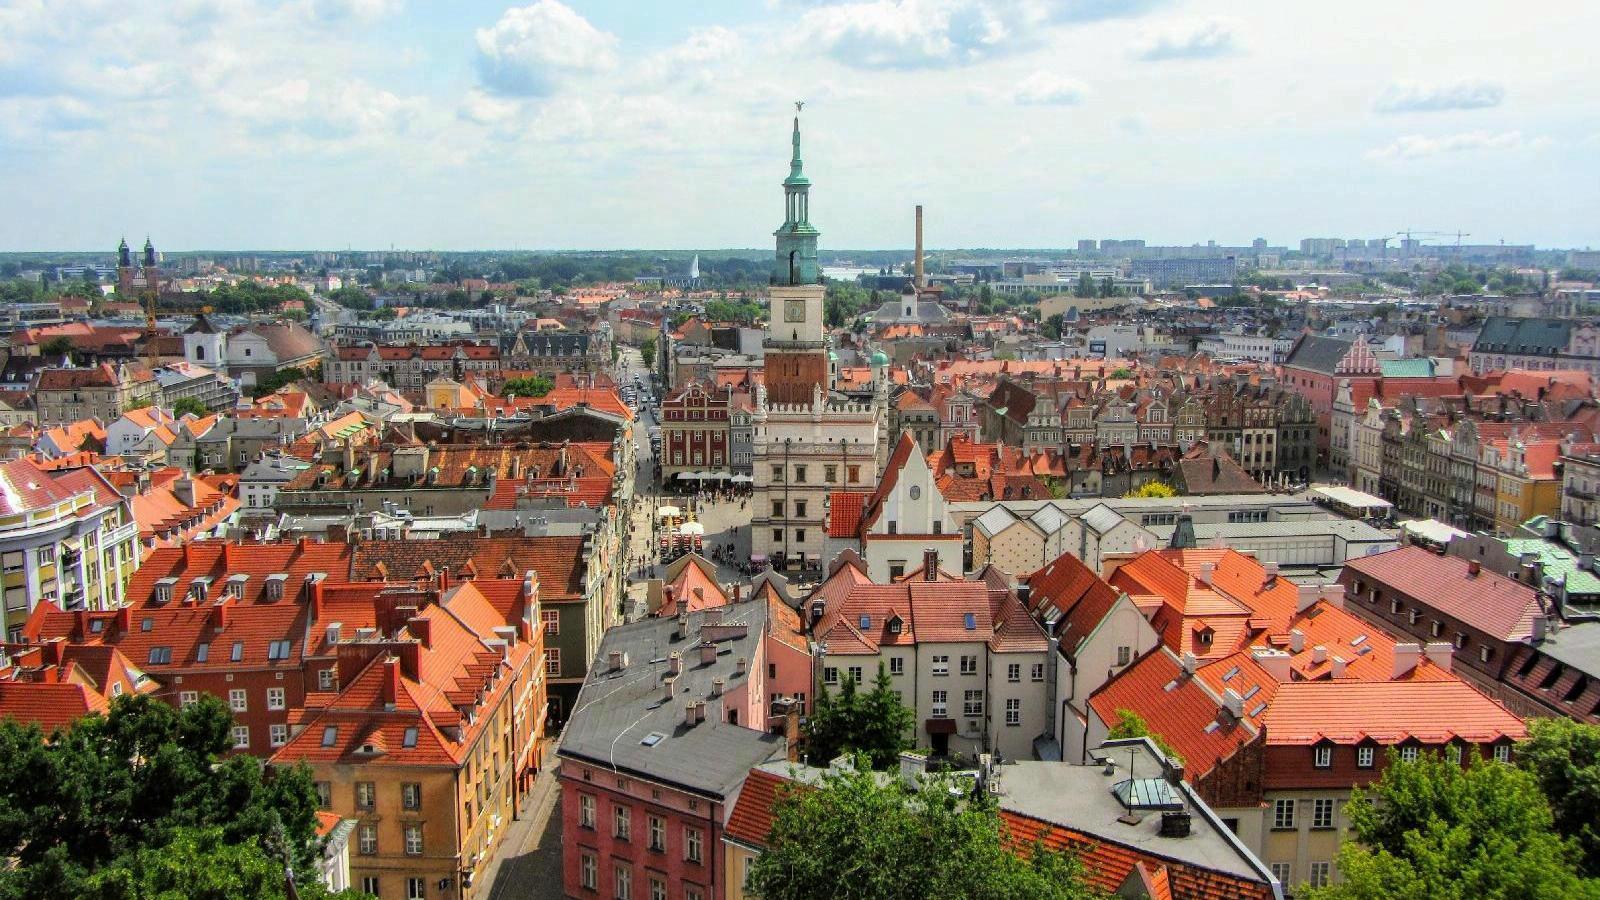 na zdjeciu panorama Poznania z lotu ptaka w centrum ratusz